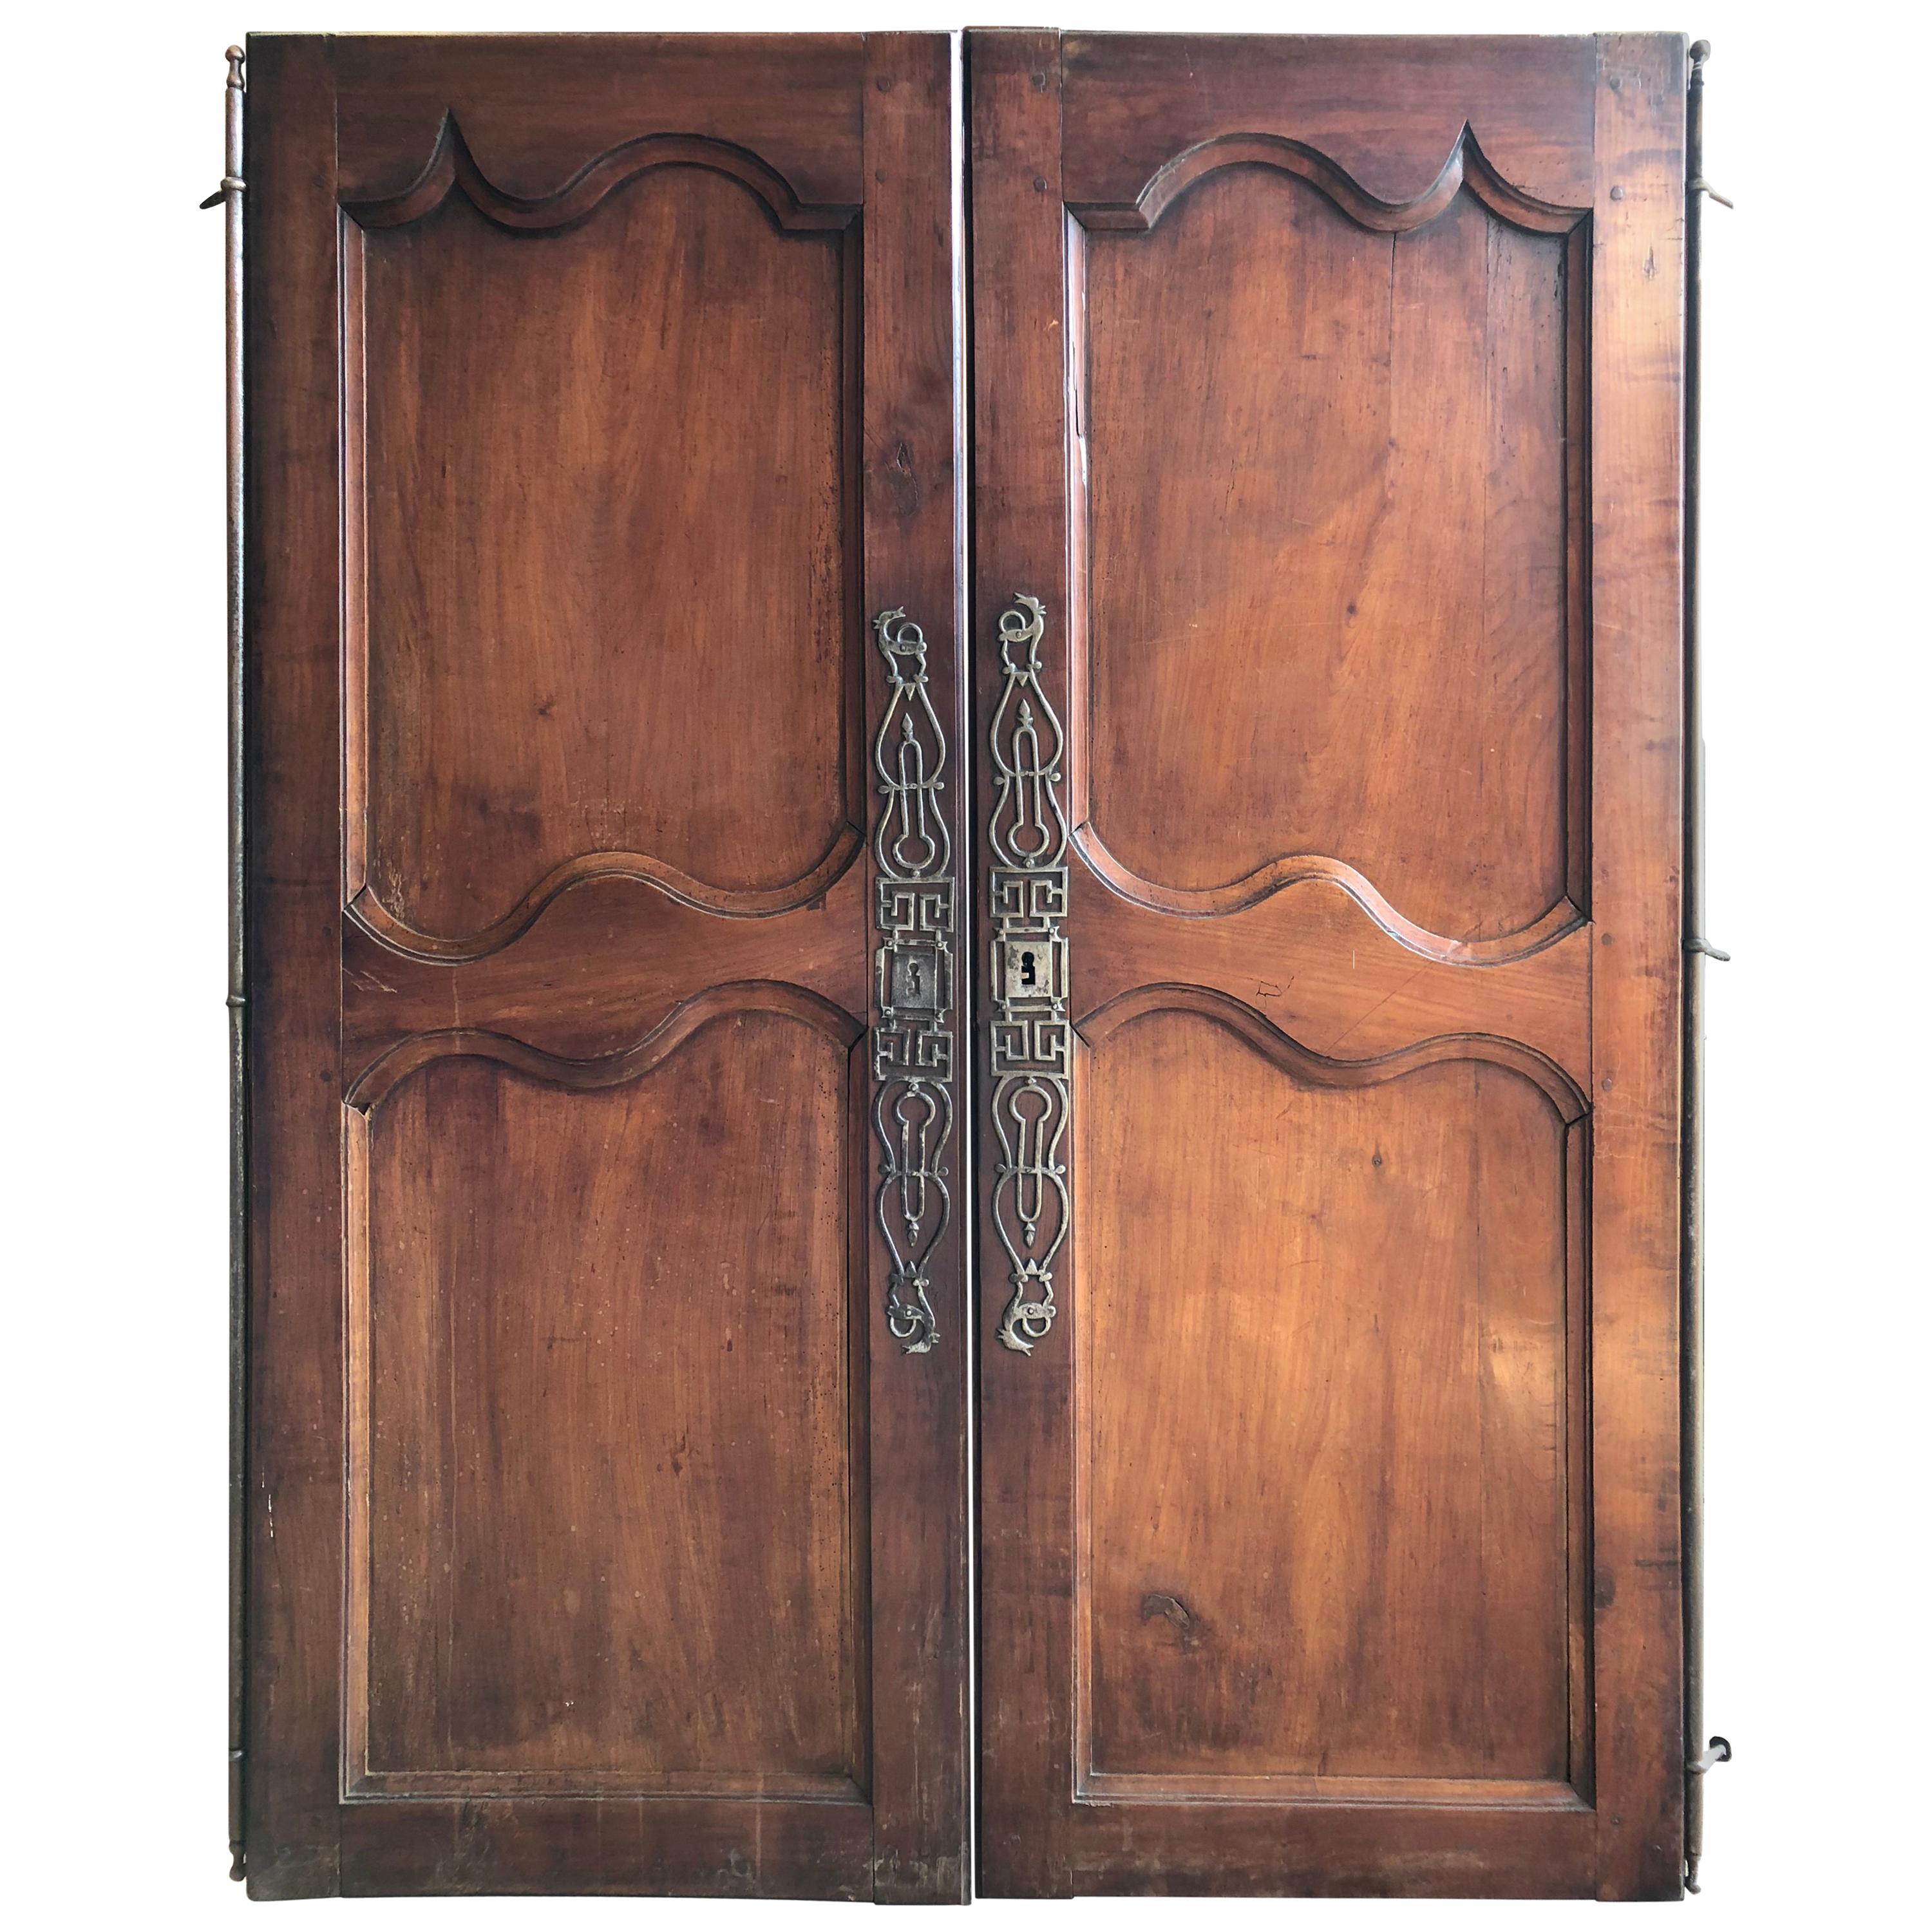 Pair of 18th Century French Doors, 62” high x 24” w each door